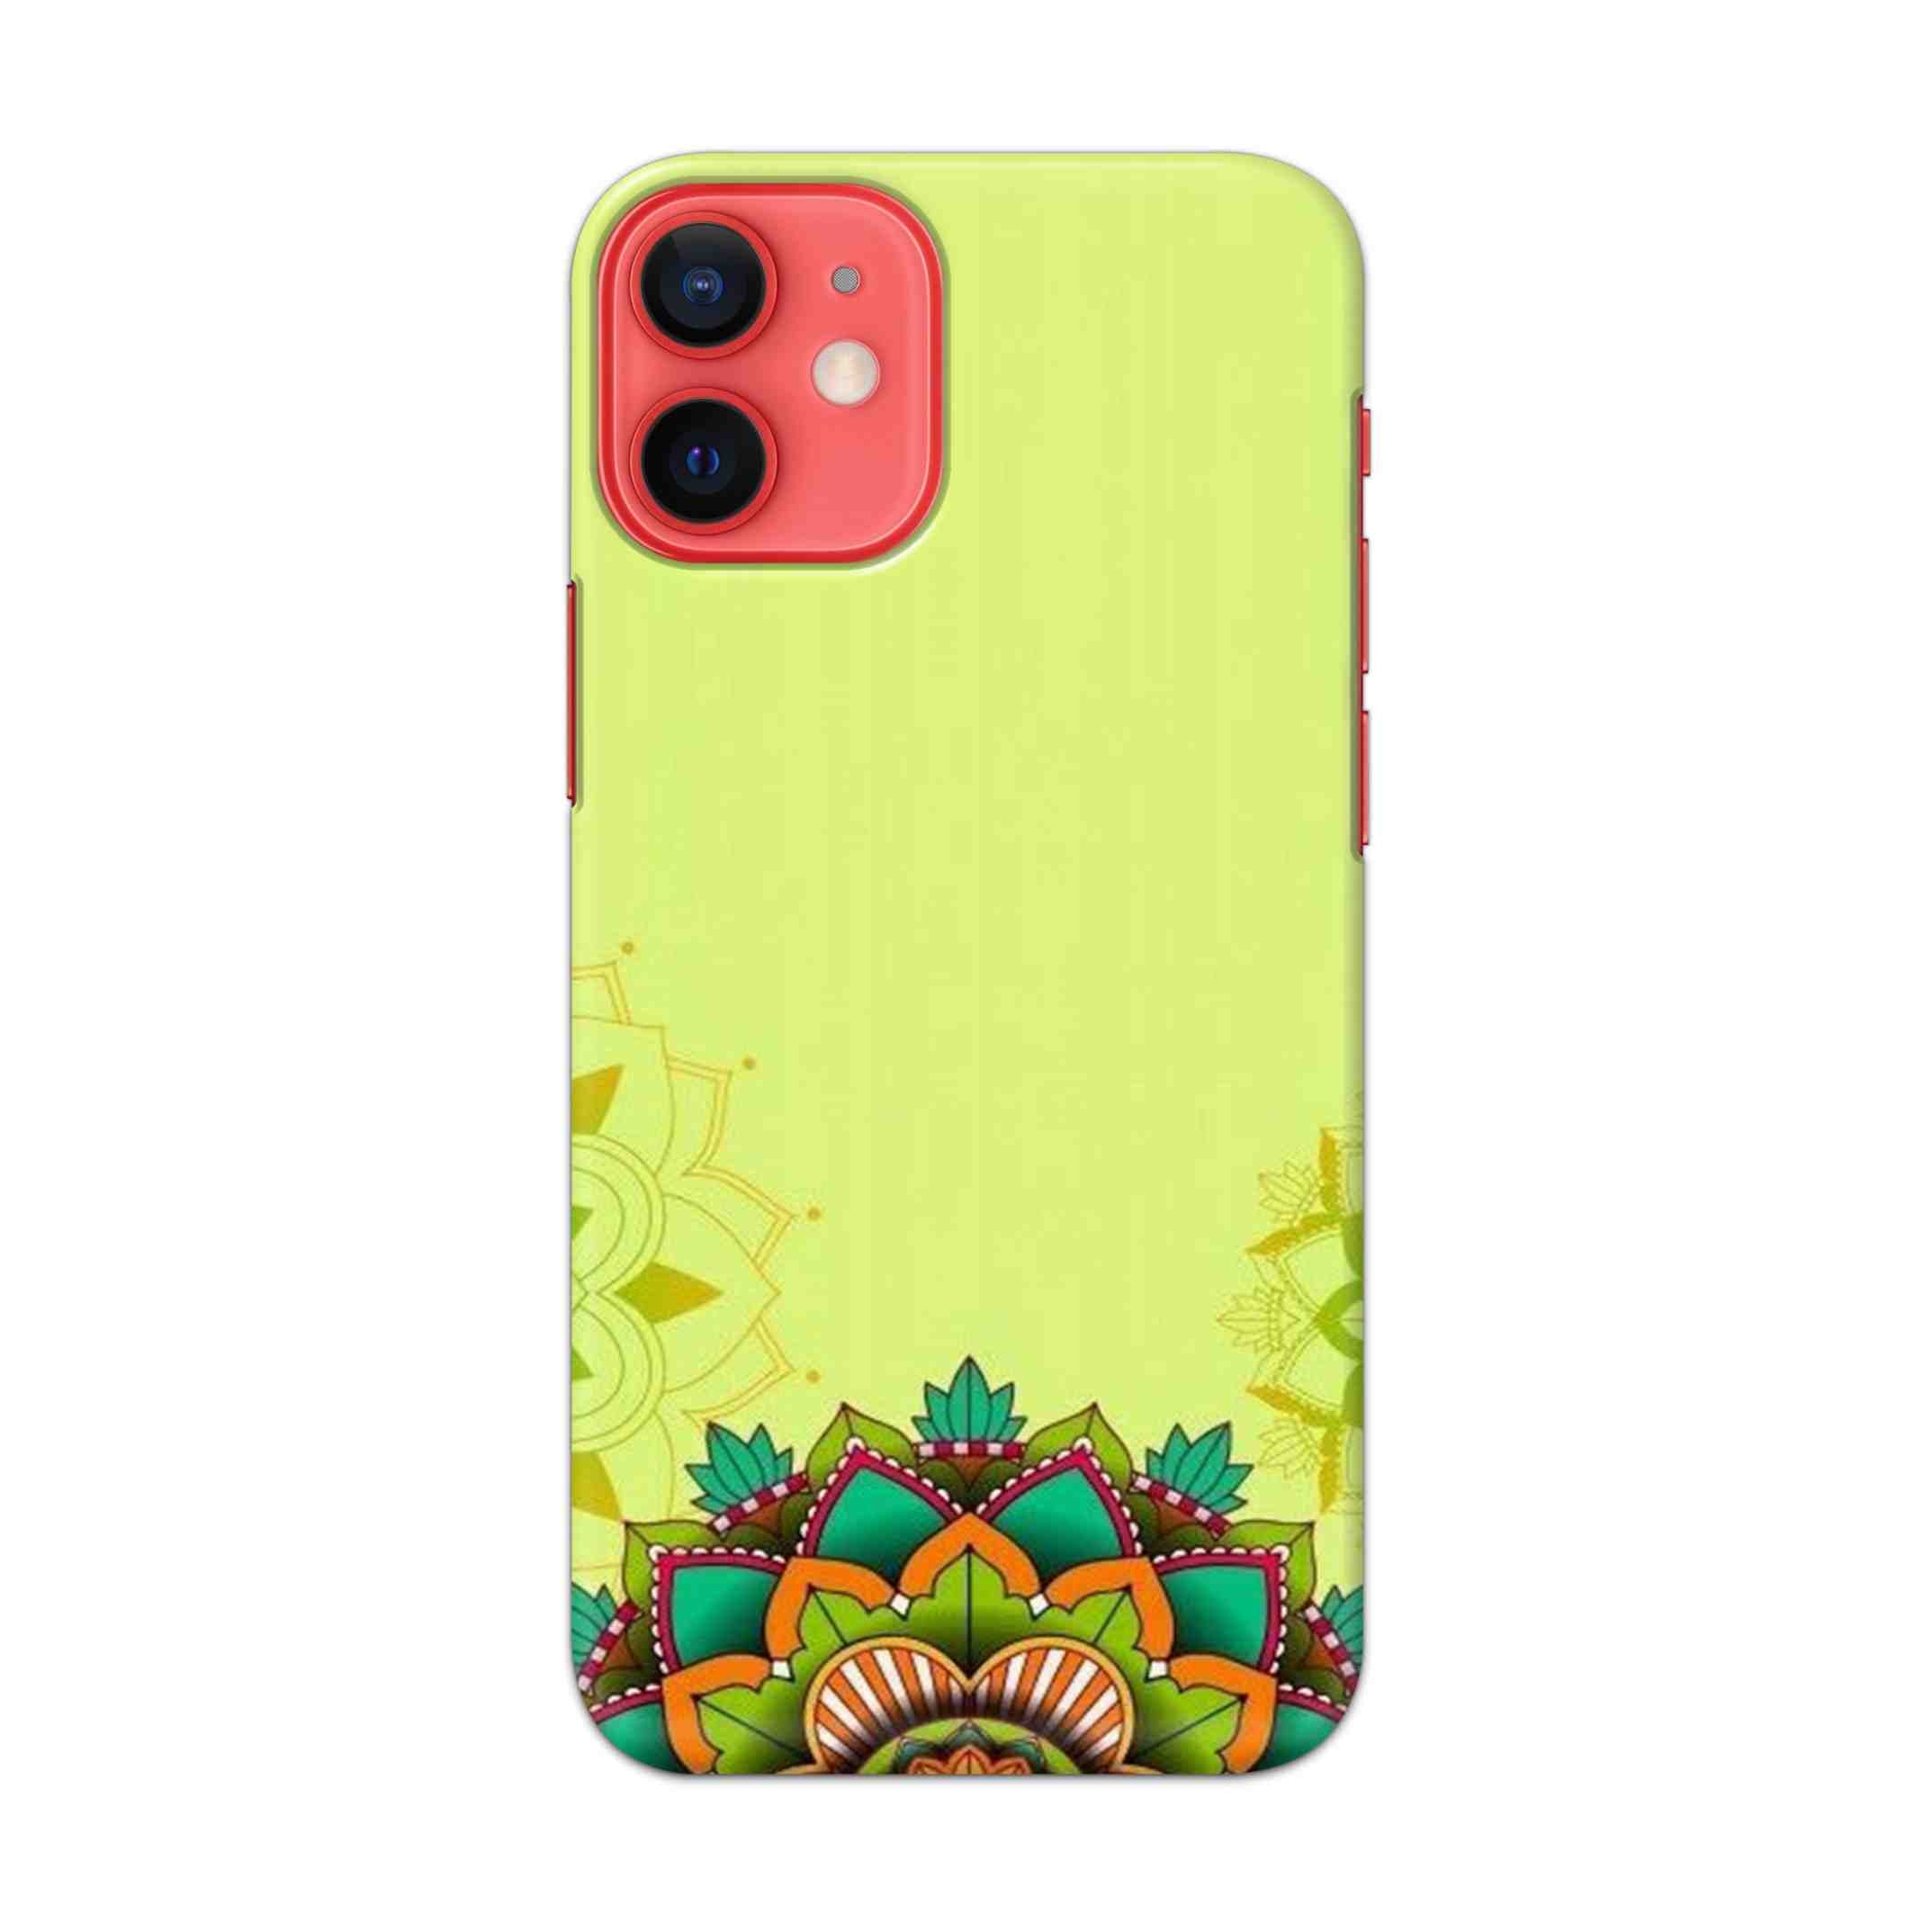 Buy Flower Mandala Hard Back Mobile Phone Case/Cover For Apple iPhone 12 mini Online